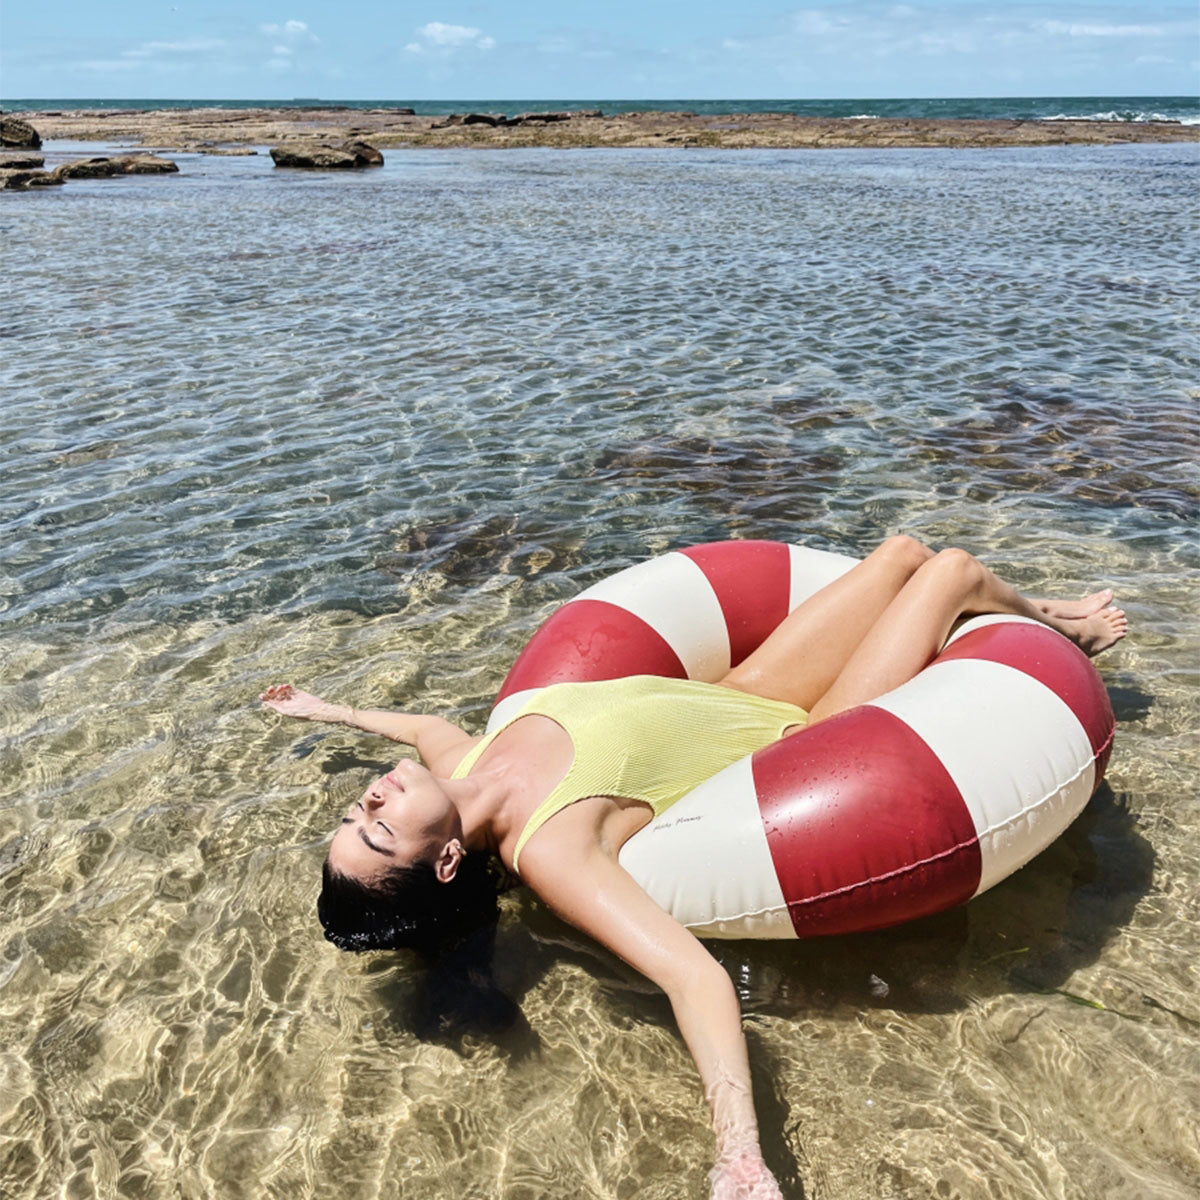 De Petites Pommes Celine zwemband in de kleur ruby red is een opblaasbare zwemband met een diameter van 120cm. Met deze zwemring kan jouw kindje heerlijk relaxen en zwemmen in het zwembad of de zee. VanZus.